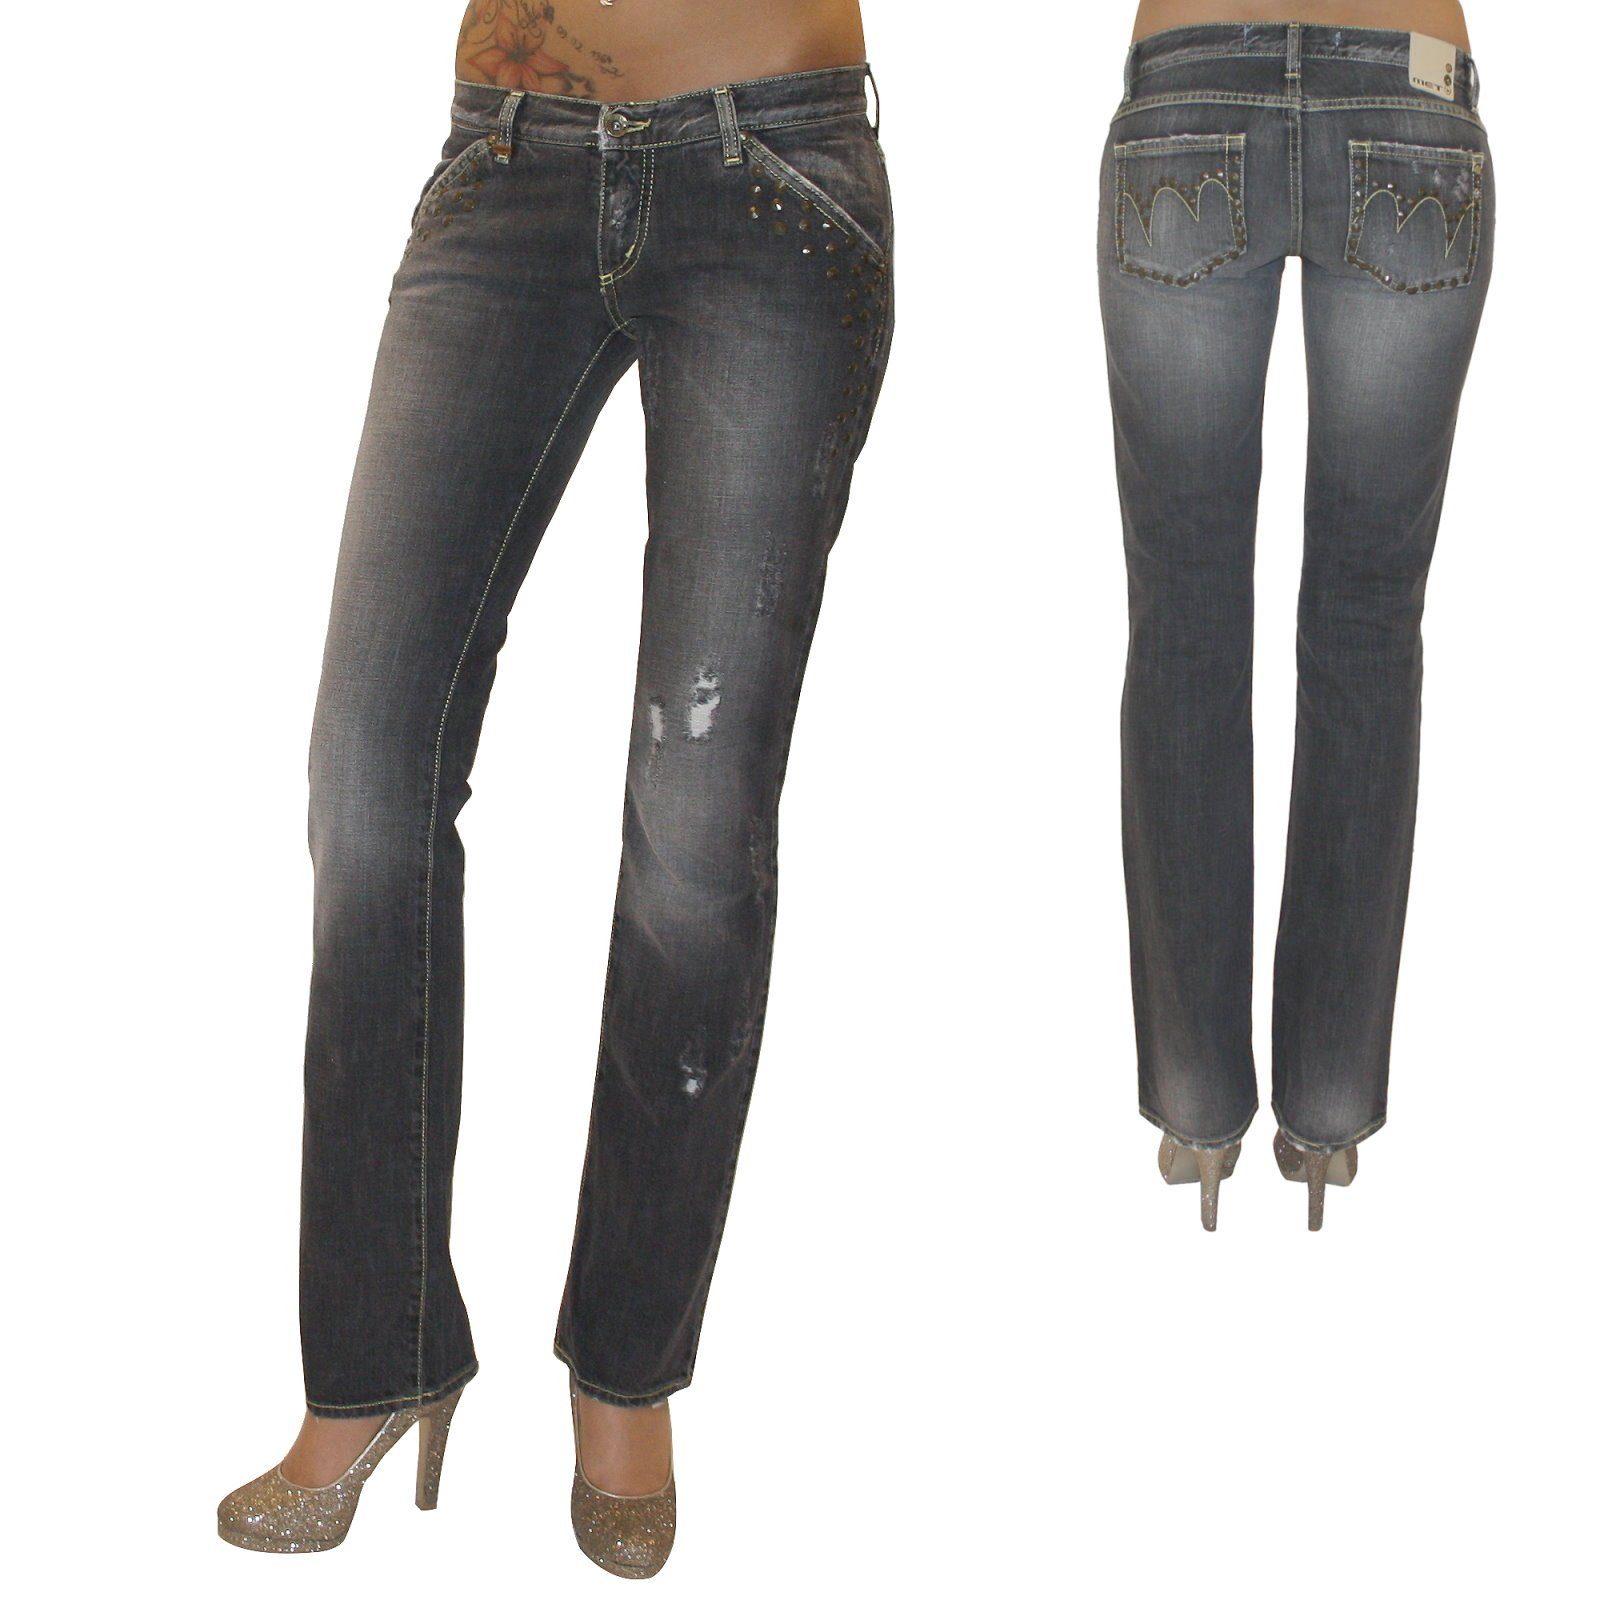 MET Jeans Gerade Jeans »New Body« Damen Destroyed Jeanshose Hose gerades  Bein grau Used Nieten online kaufen | OTTO